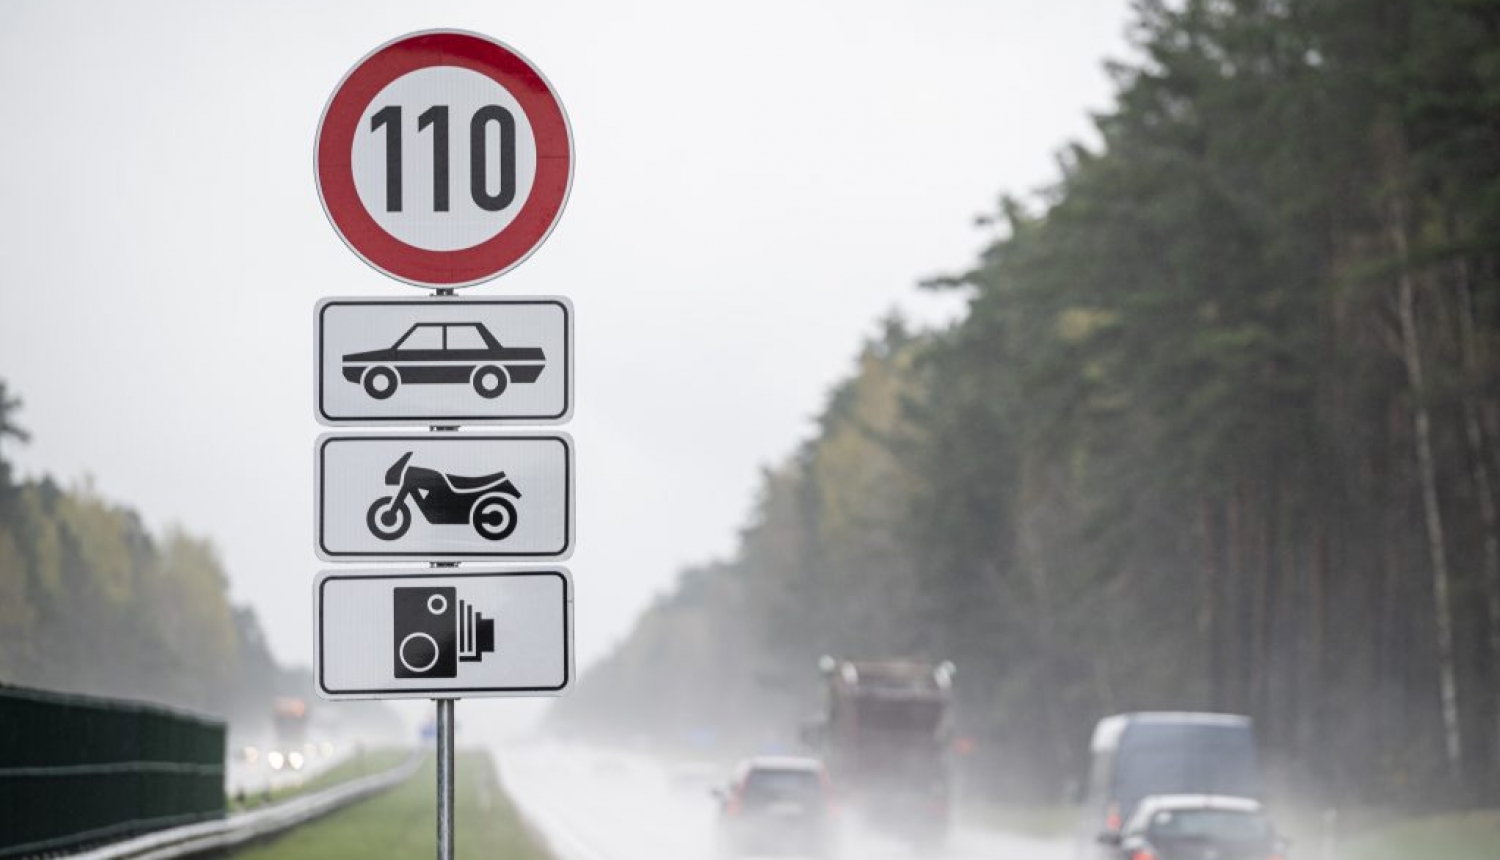 Ceļa zīme ar ātruma ierobežojumu 110 km/h